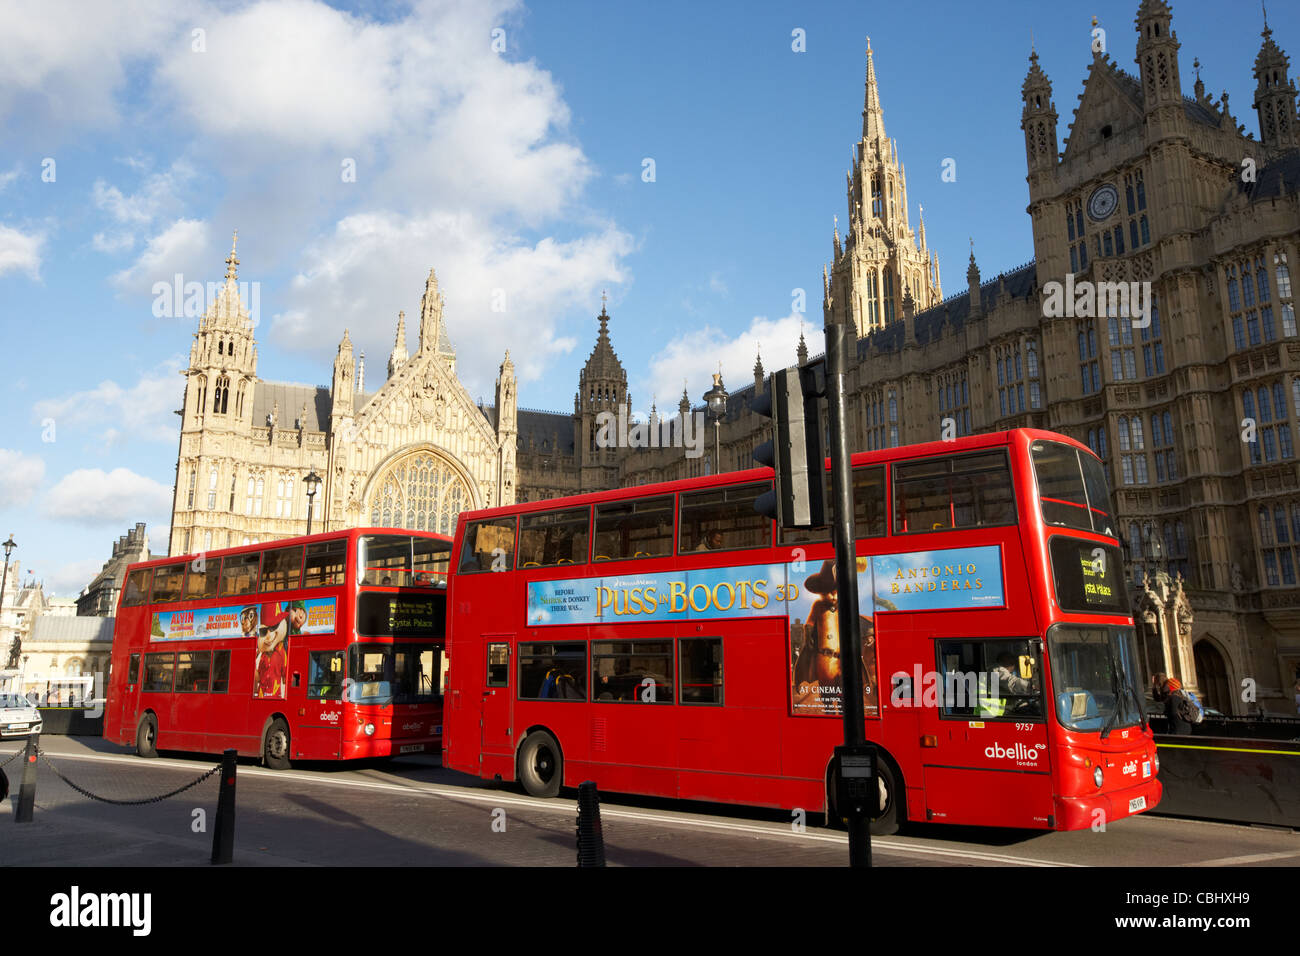 Deux bus à impériale rouge london transport public devant les maisons du parlement Angleterre Royaume-Uni uk Banque D'Images